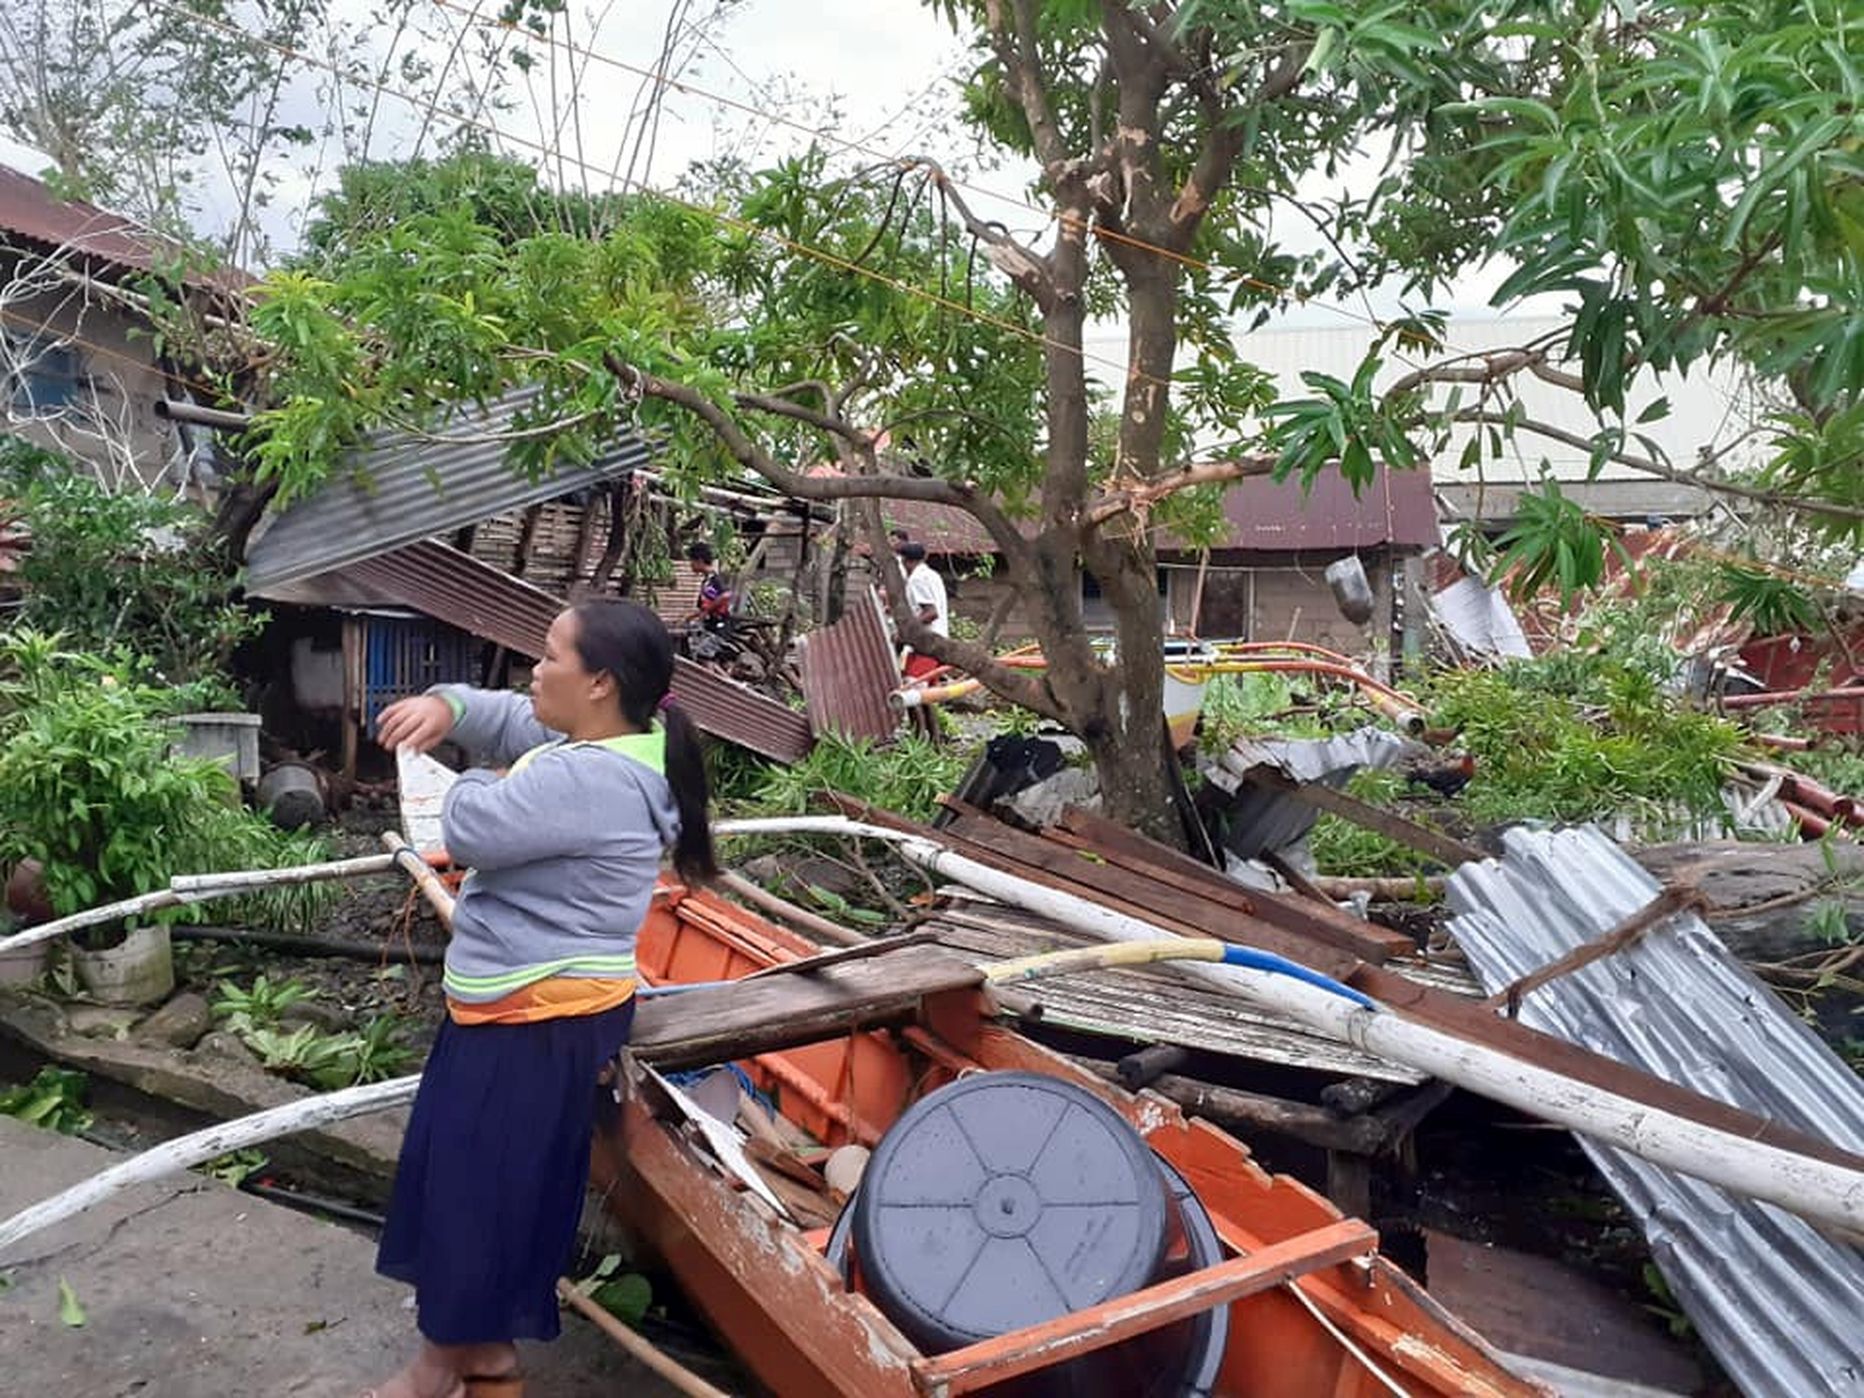 Филиппины пострадали от тайфуна «Урсула», которому по международной классификации присвоено имя «Фанфон».